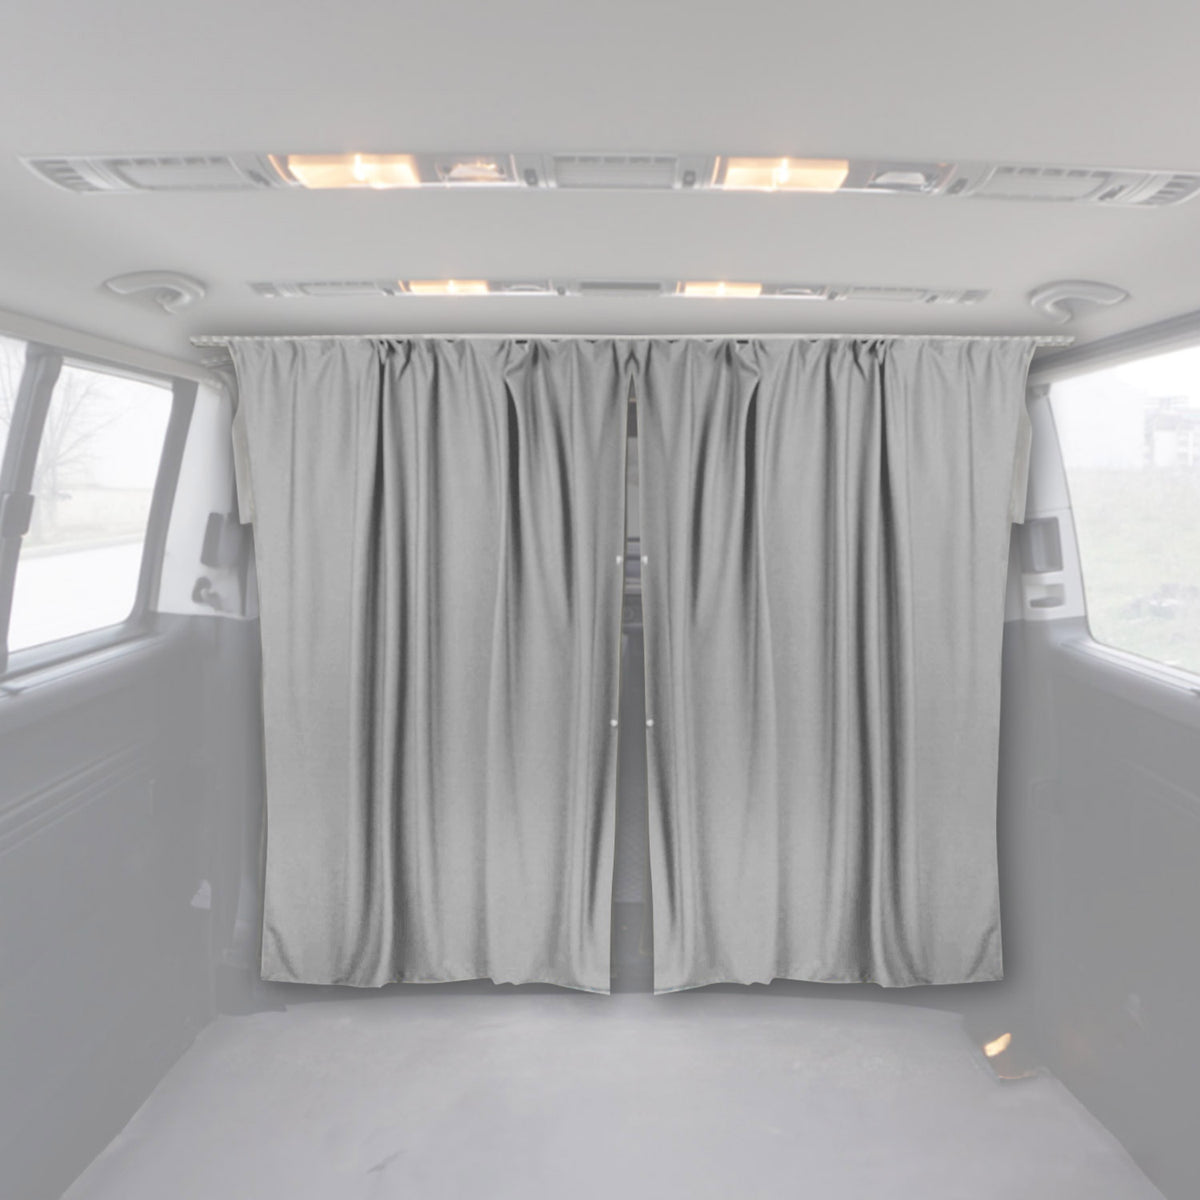 Fahrerhaus Führerhaus Gardinen Sonnenschutz für Ford Transit H2 Grau 2tlg